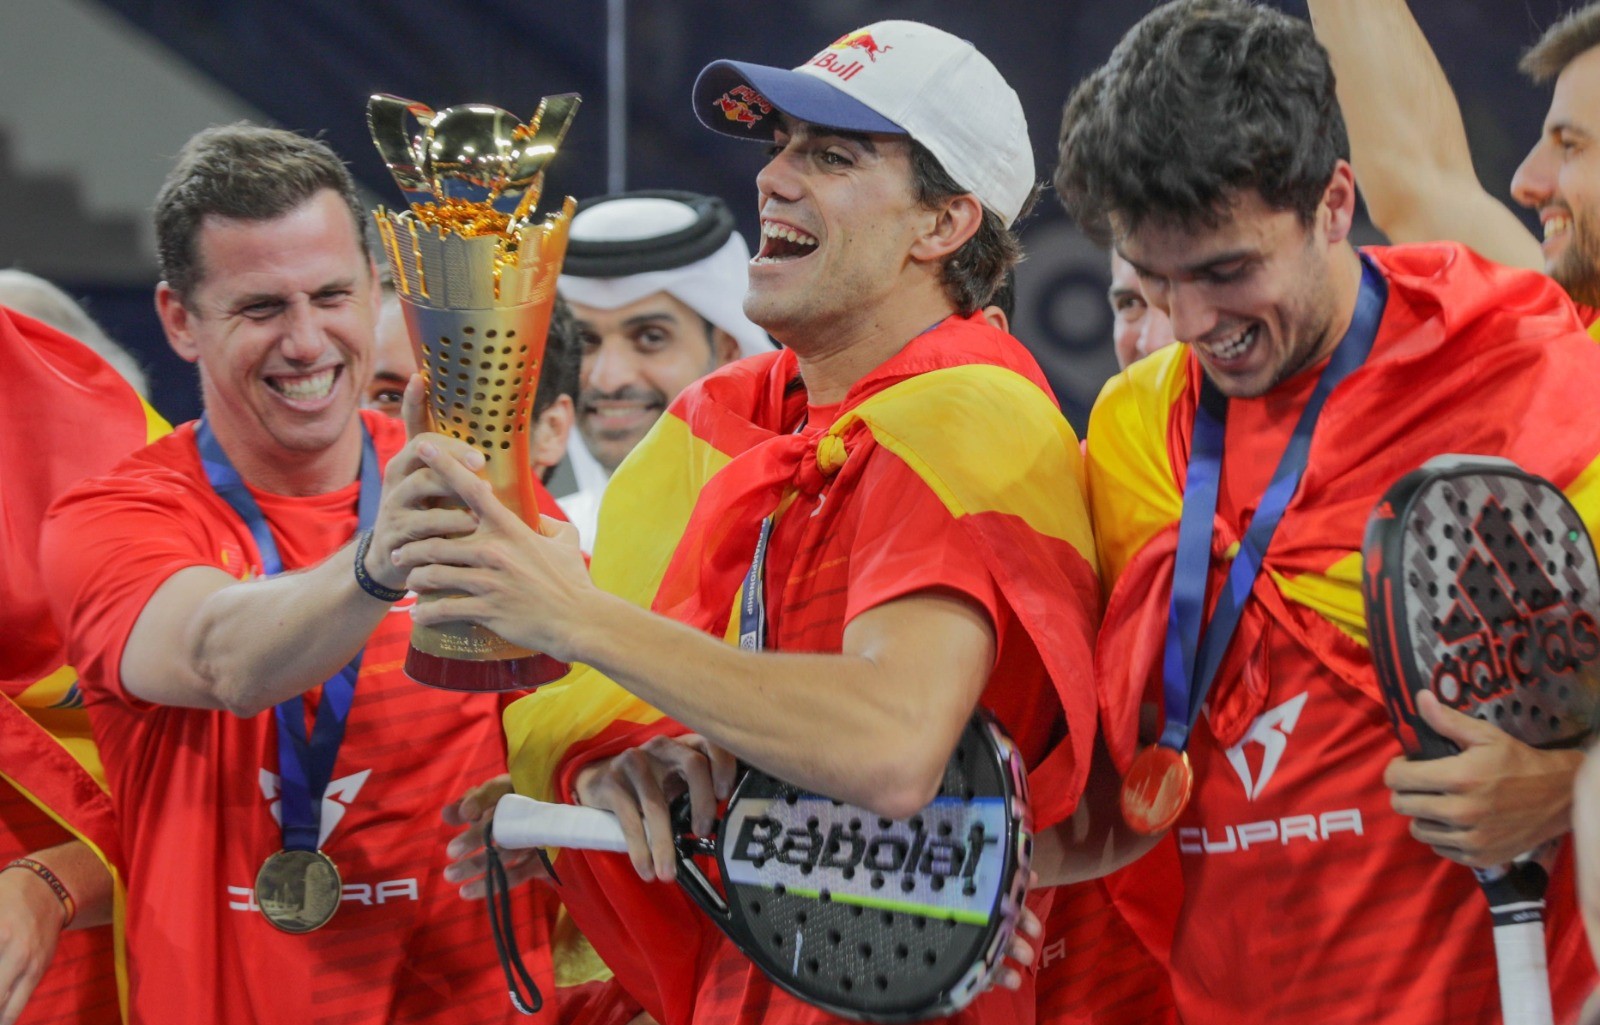 Joy voitto Espanjan maailmanmestari lebron paquito galan qatar